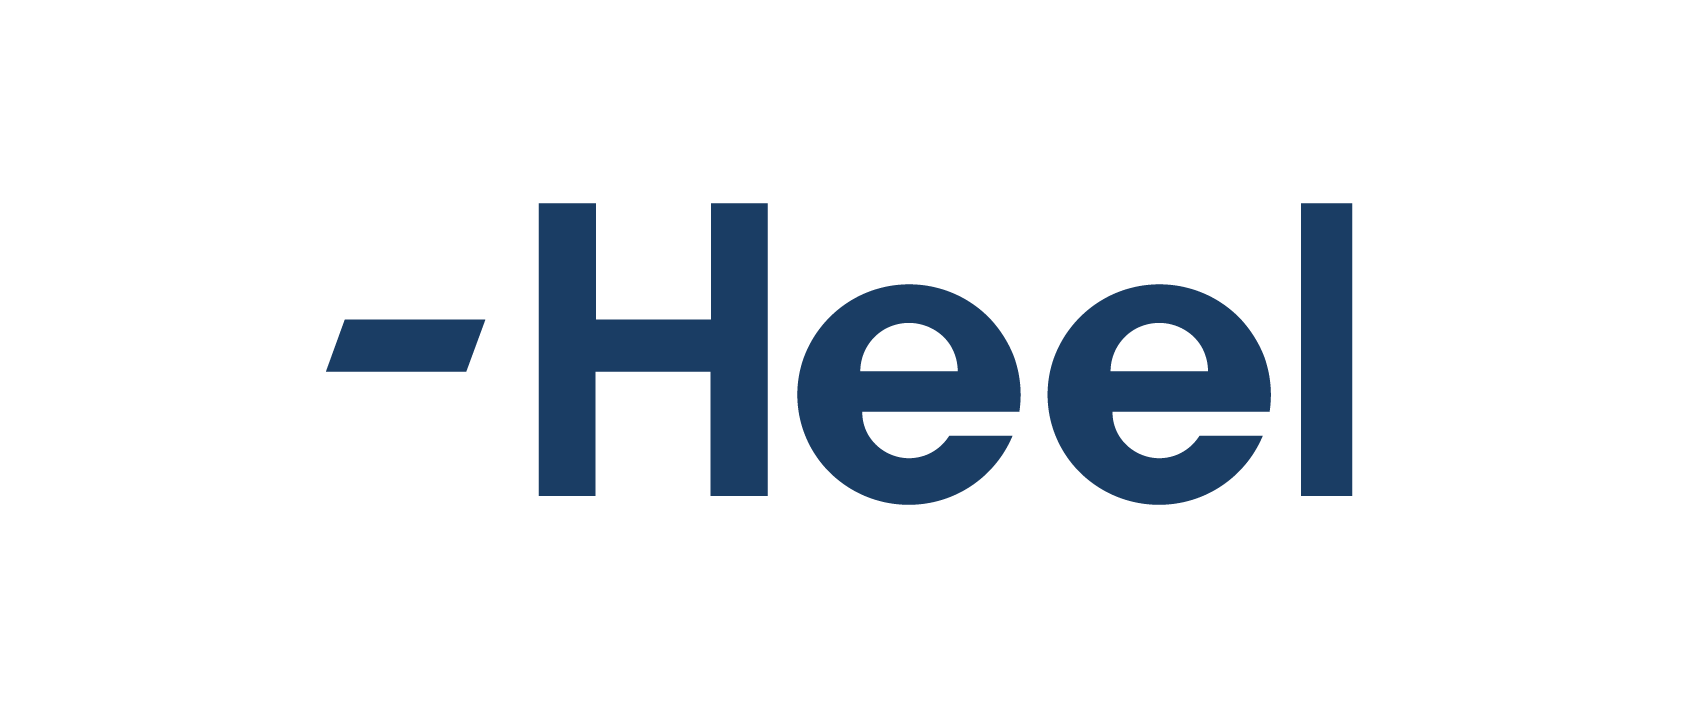 Heel